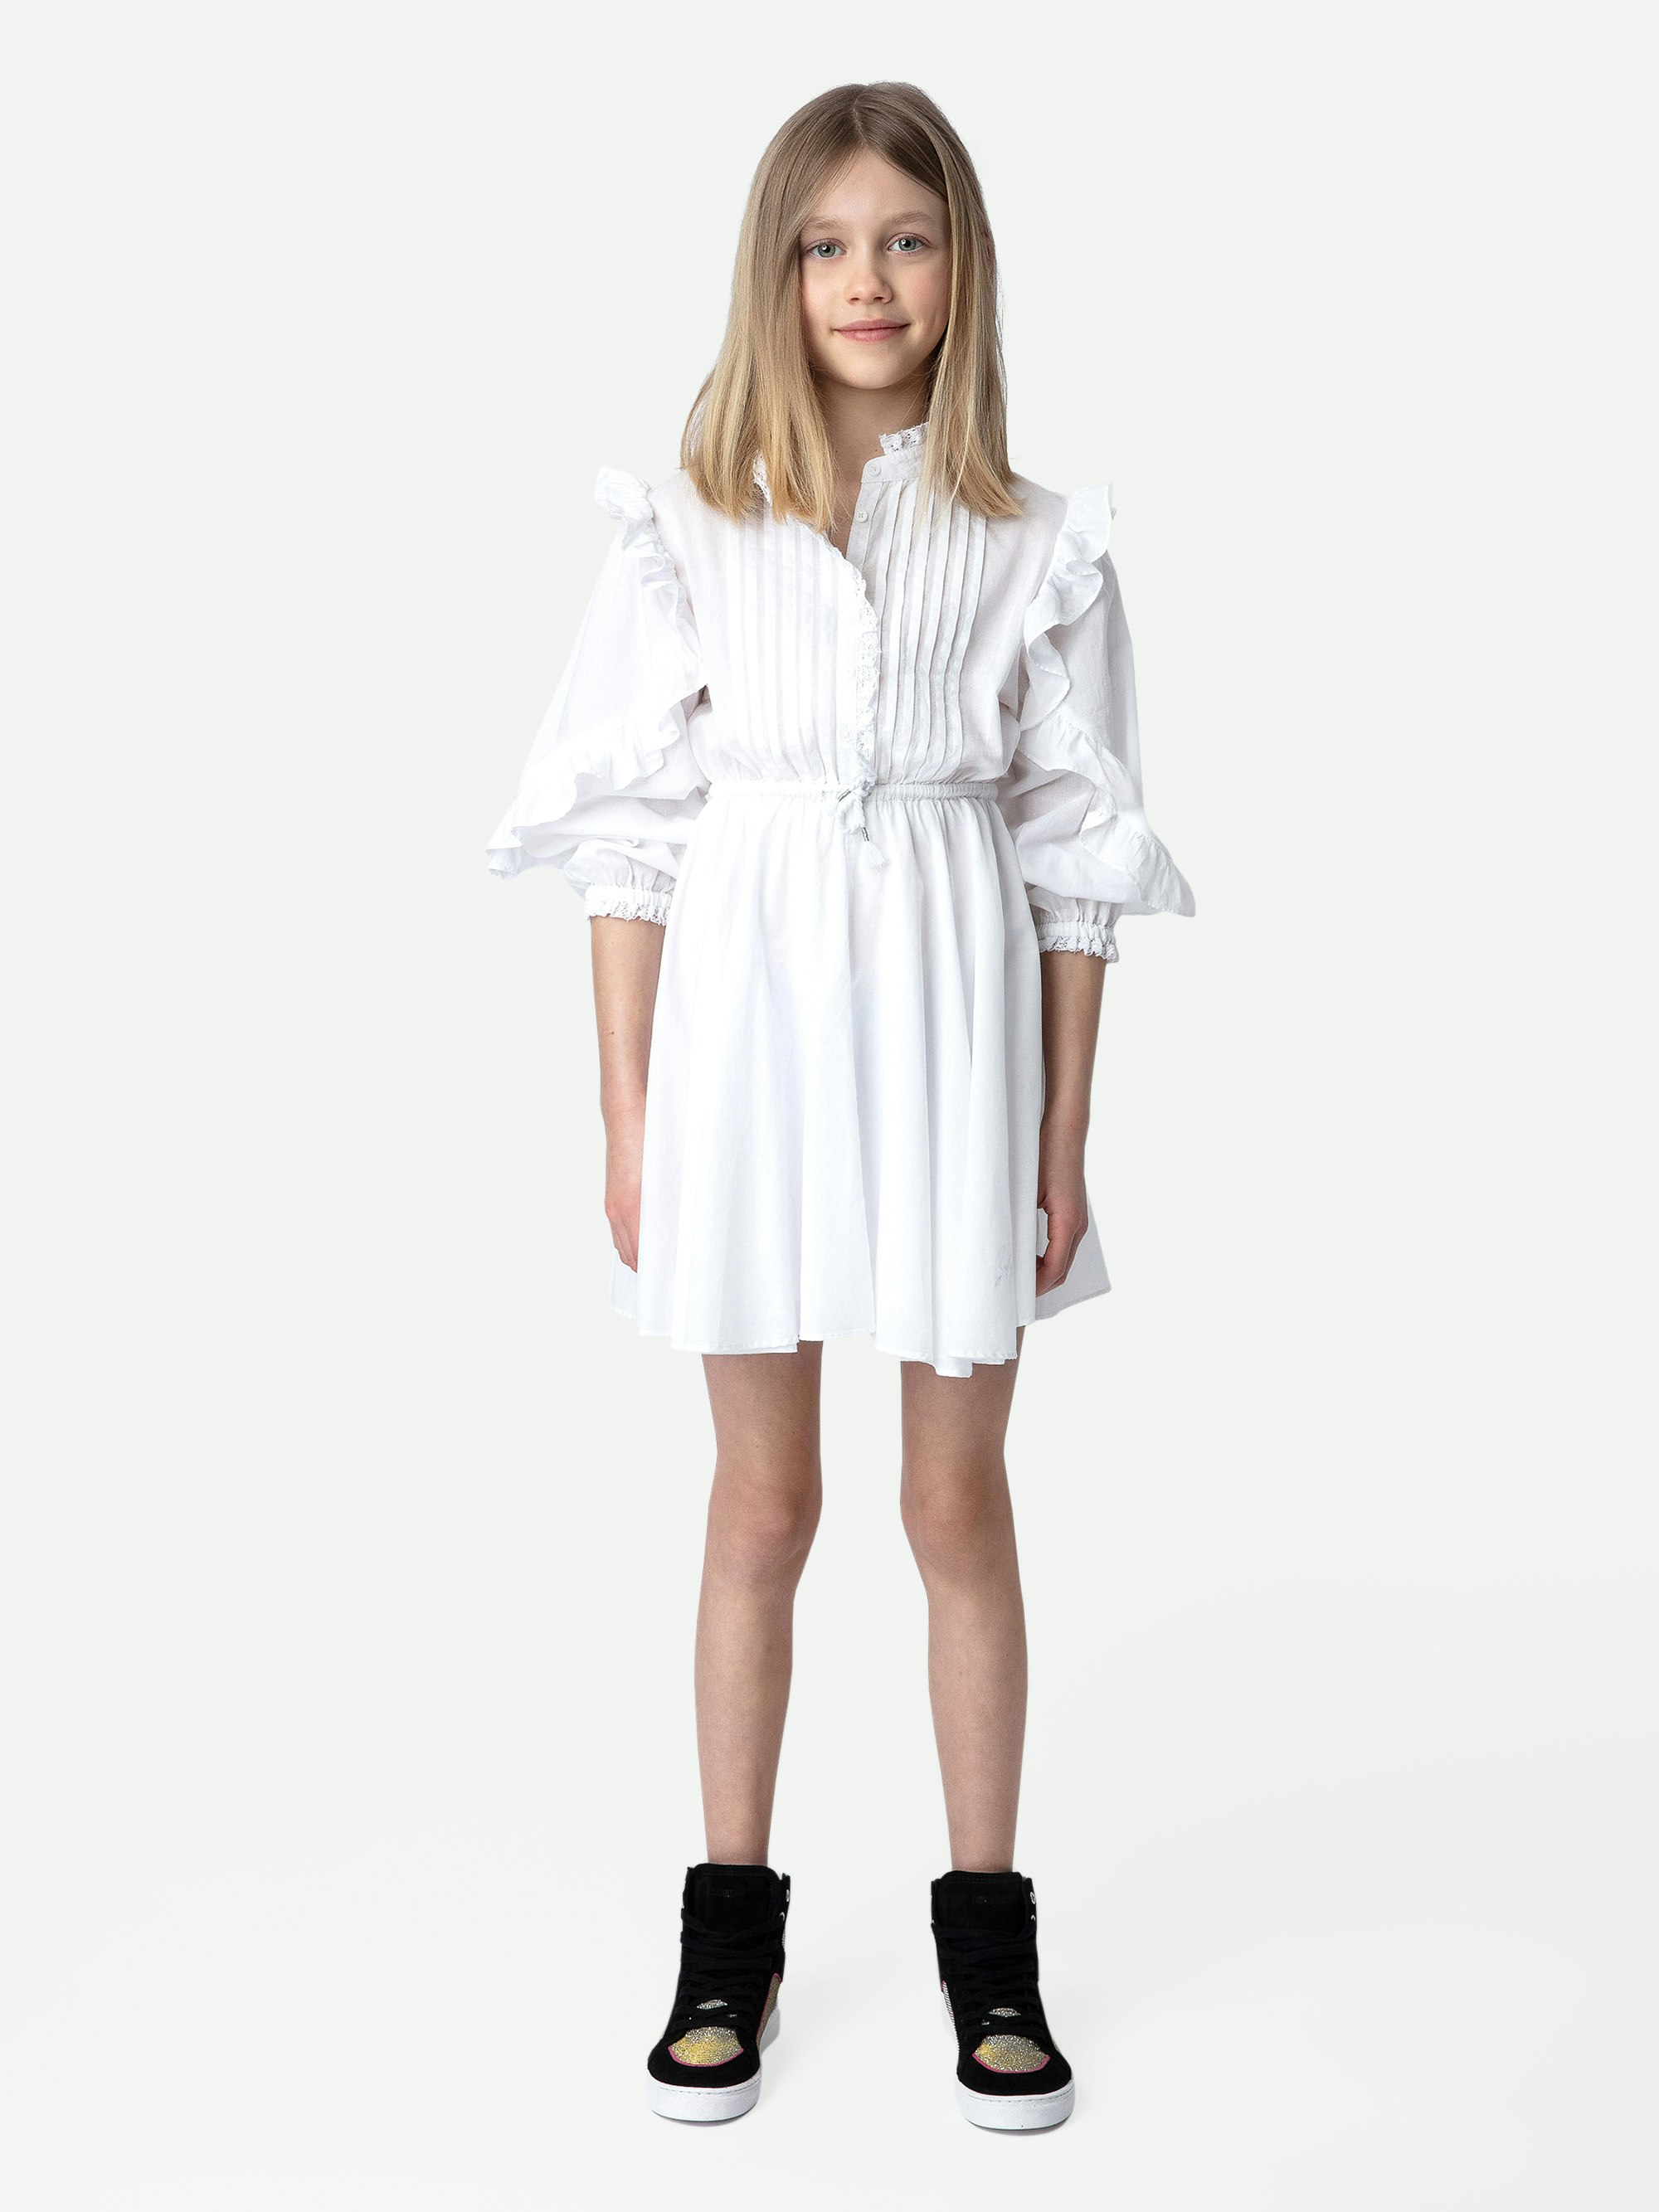 Kleid Ranil für Mädchen - Festliches Mädchenkleid aus weißer Baumwolle mit gerüschtem Rockteil und Spitze.